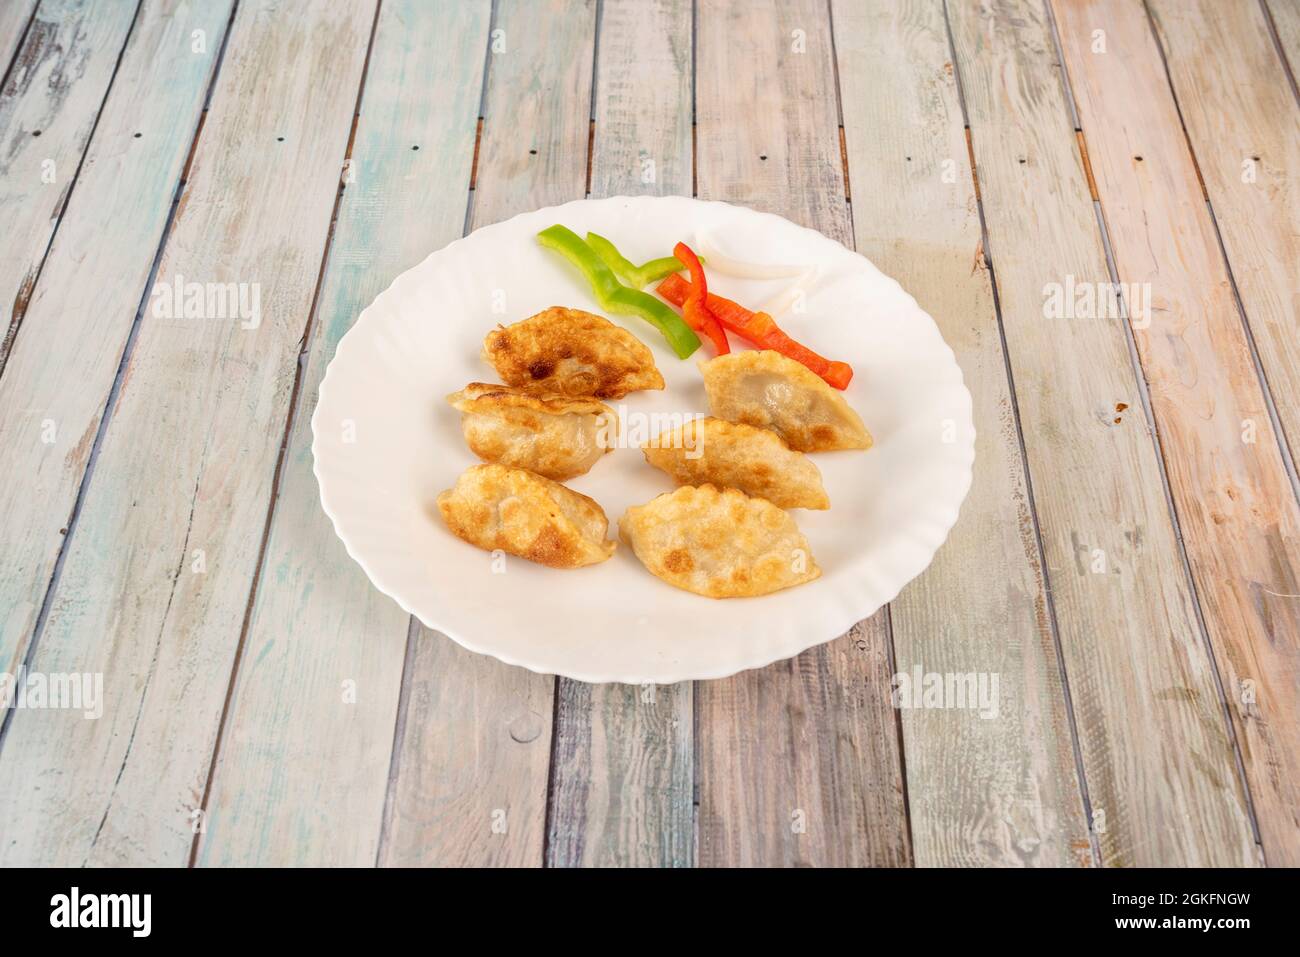 Gnocchi cinesi fritti gyozas farciti con verdure su piatto bianco rotondo Foto Stock